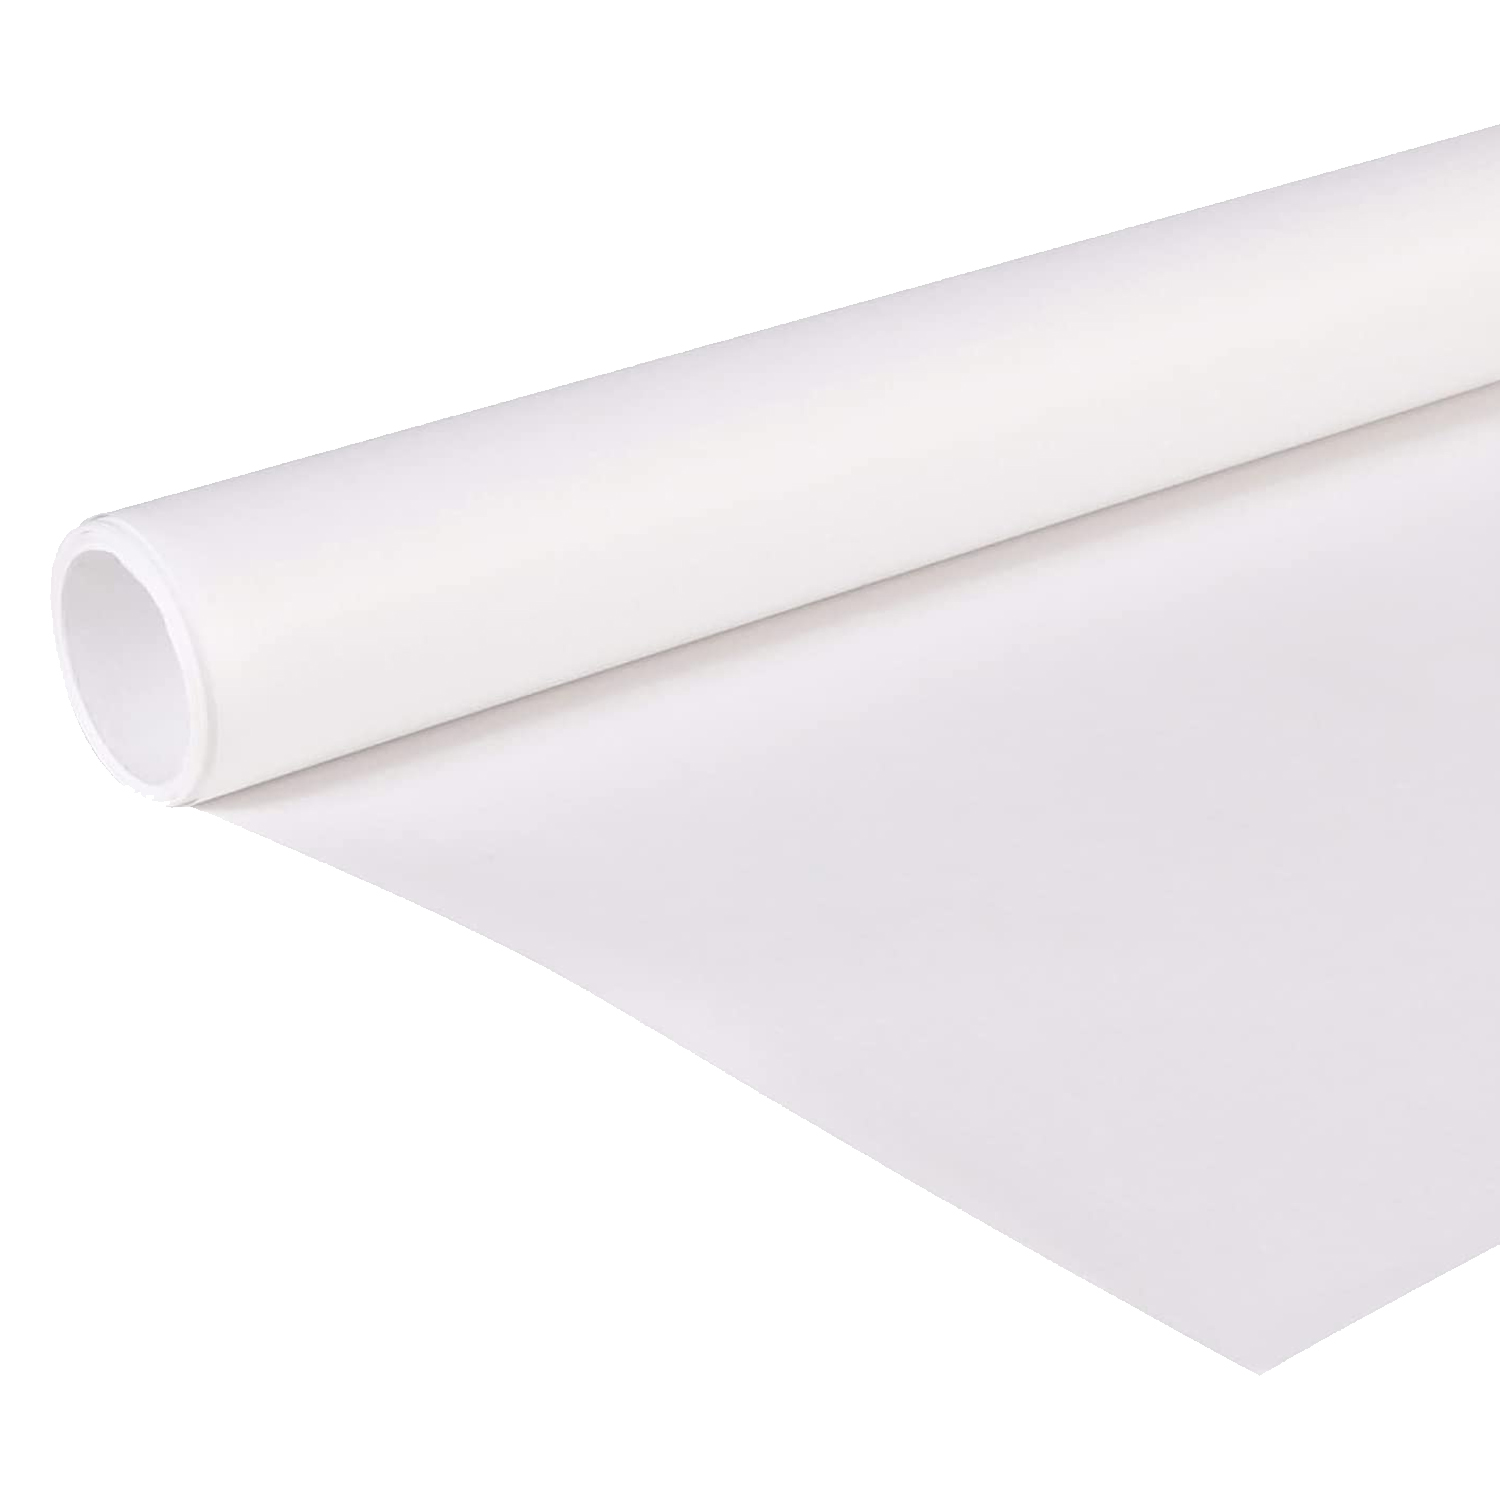 NEU Clairefontaine Kraftpapier Weiß, 1 x 10 m Rolle, 60g/qm